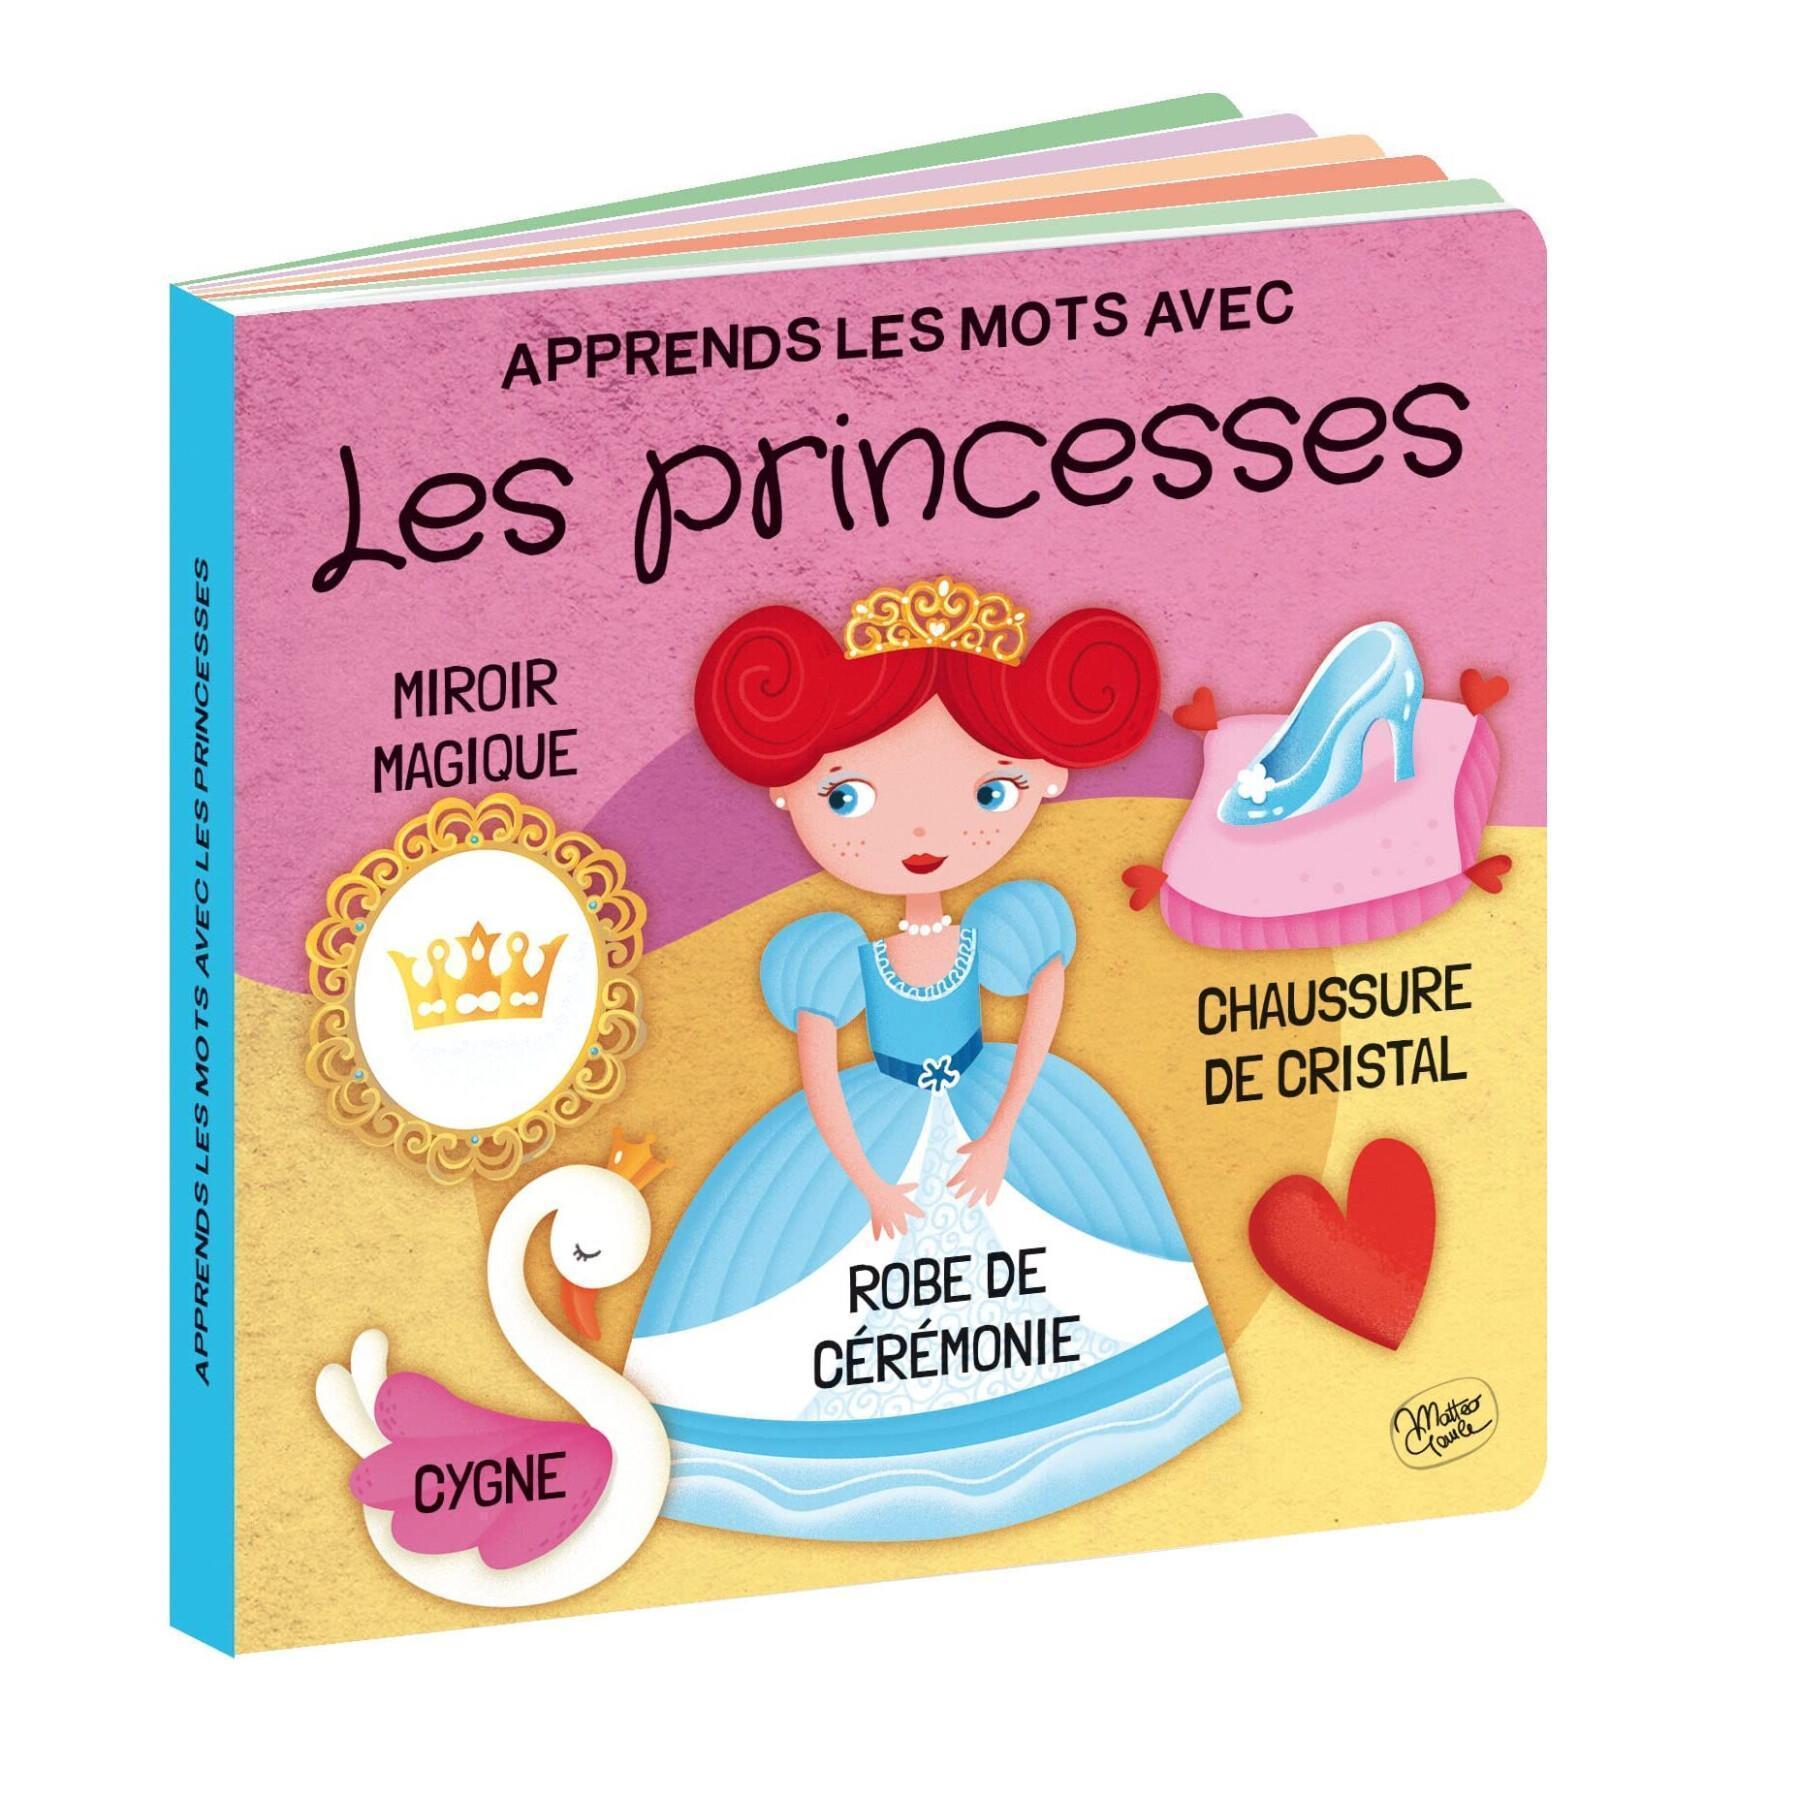 Puzzel + 2 prinsessenboekjes Sassi